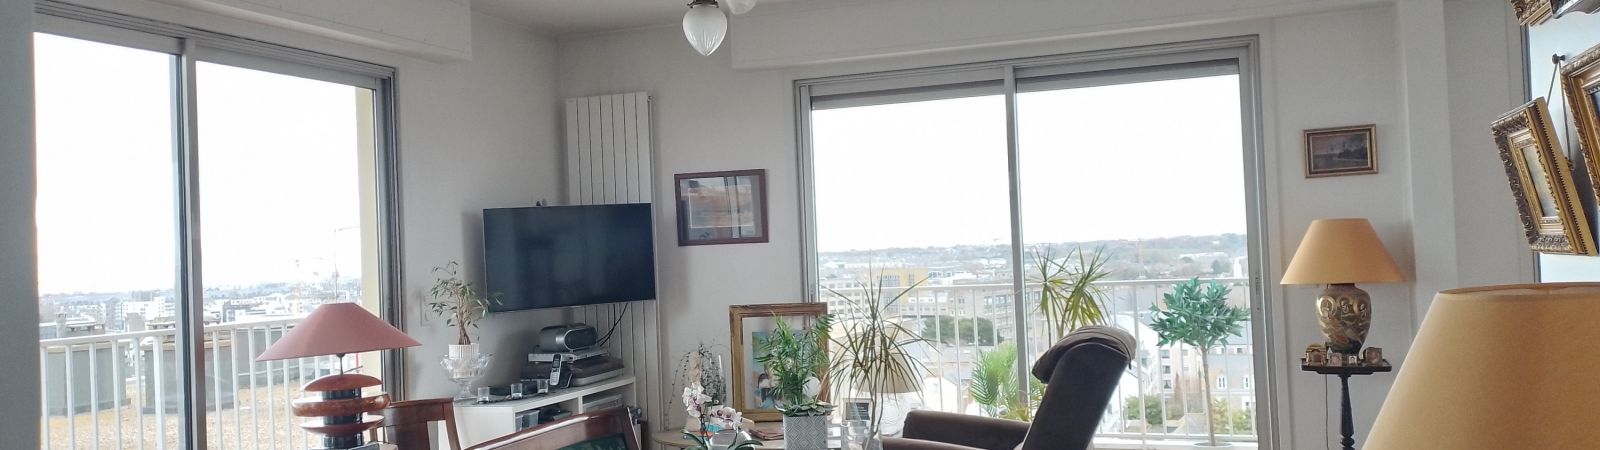 photo 3: Appartement 5 pièces TERRASSE  PARKING vue Panoramique sur Saint-Malo